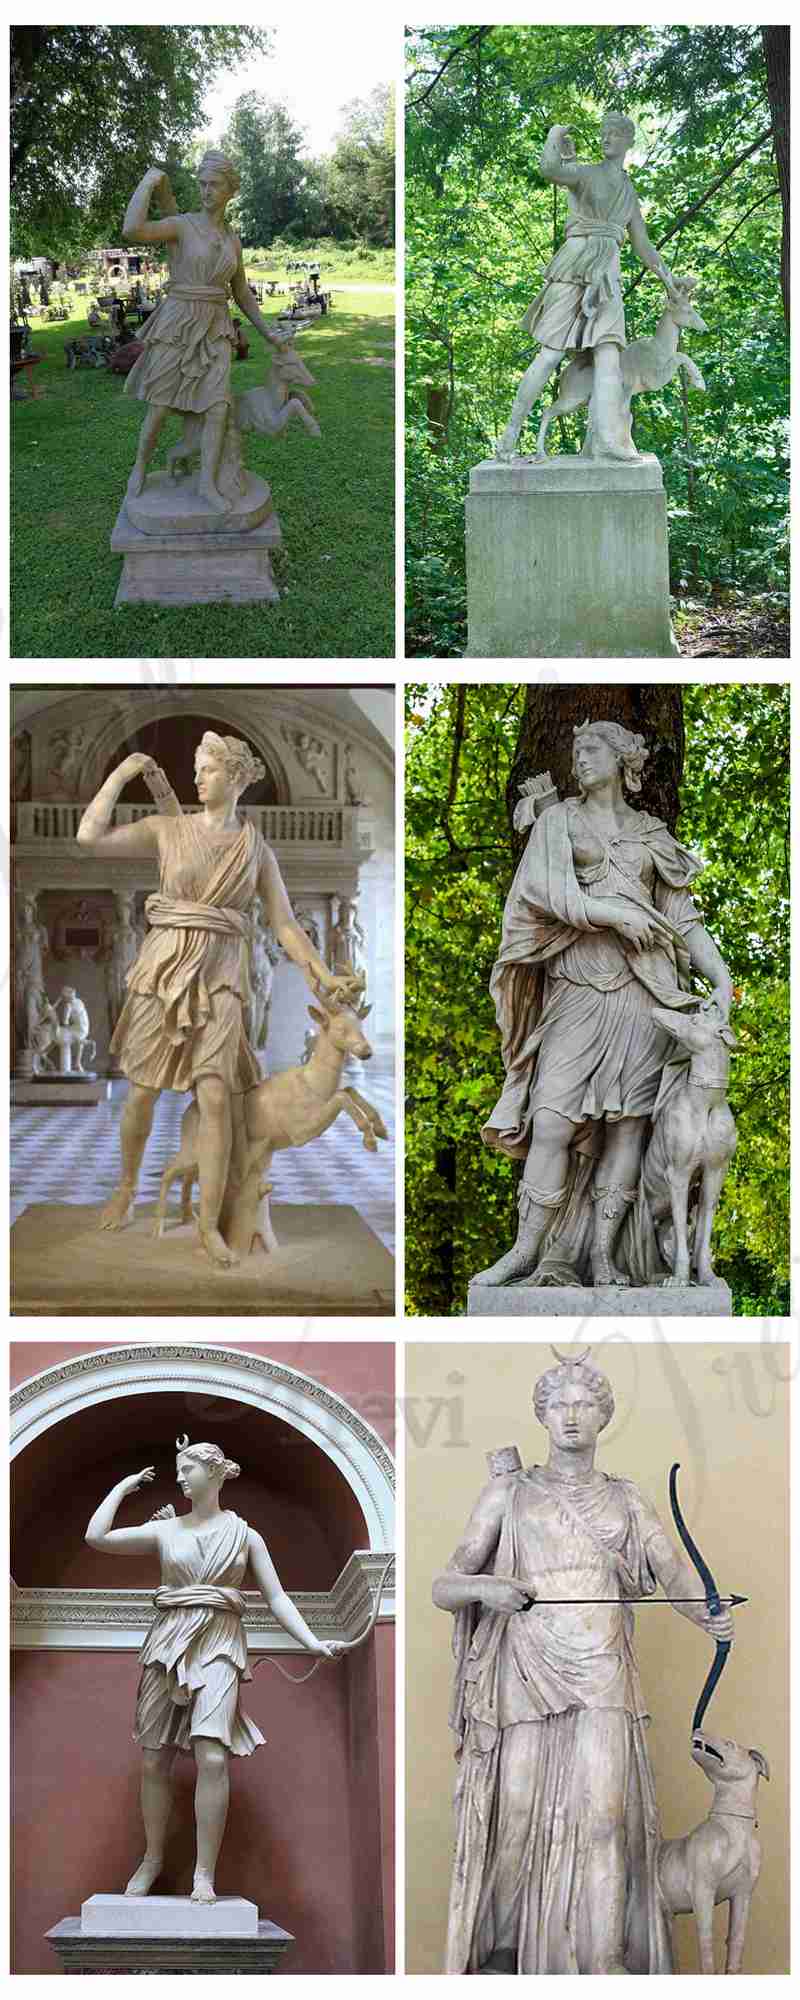 Mythological image of Artemis Diana